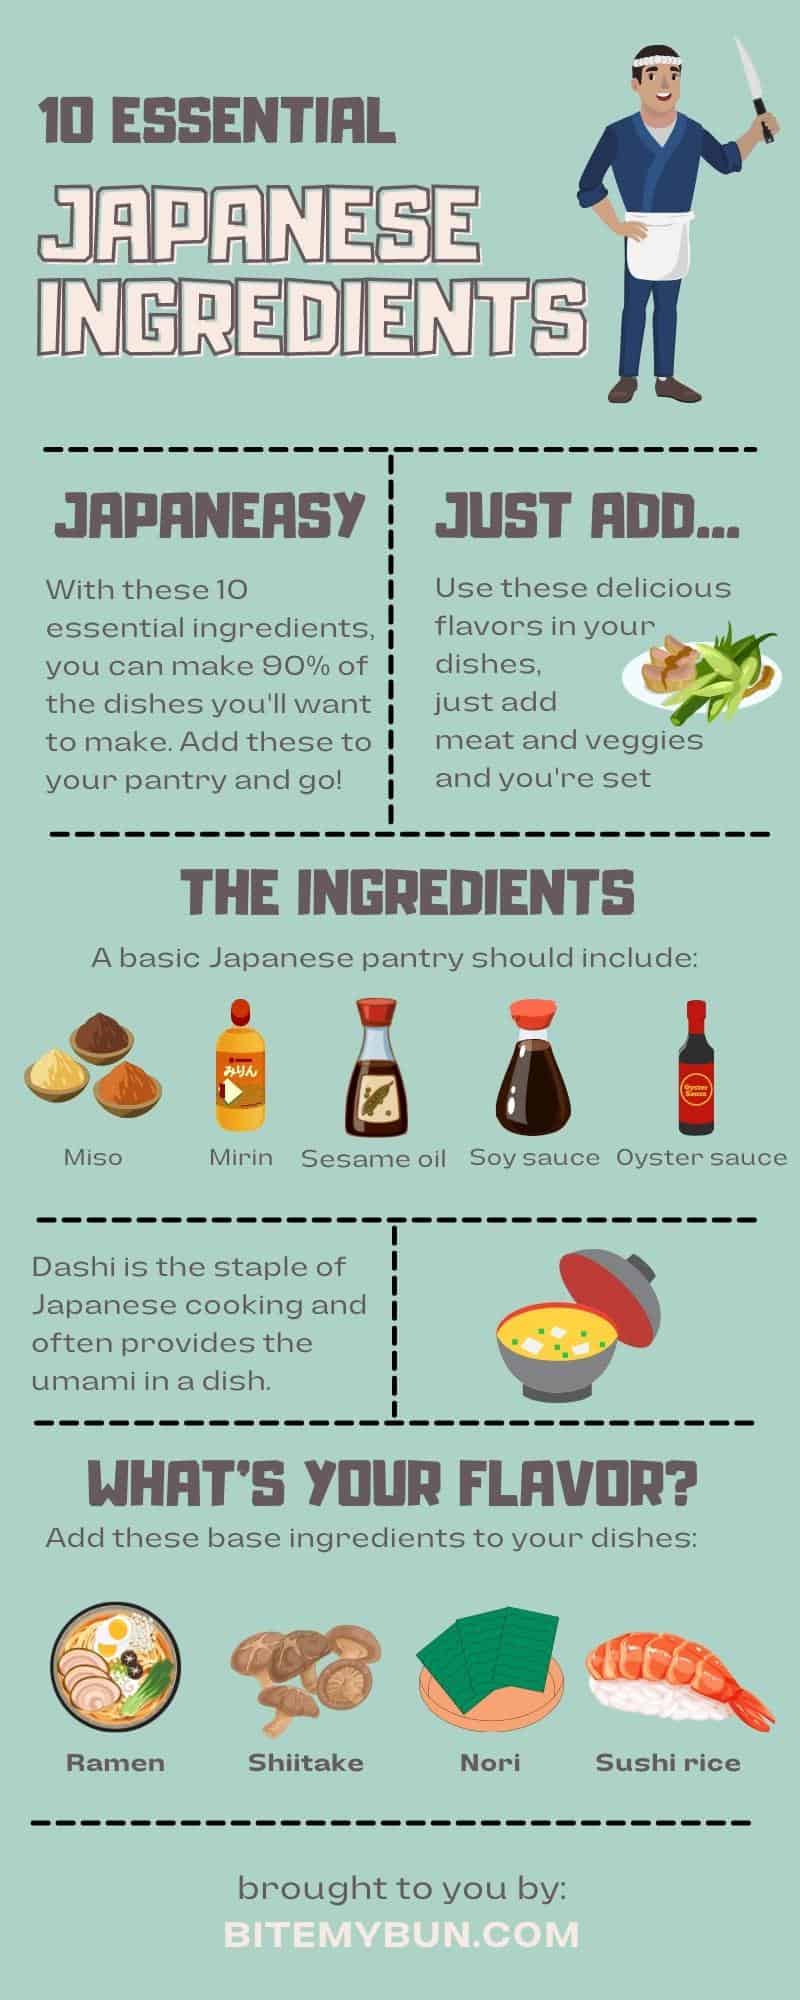 10 essential Japanese ingredients